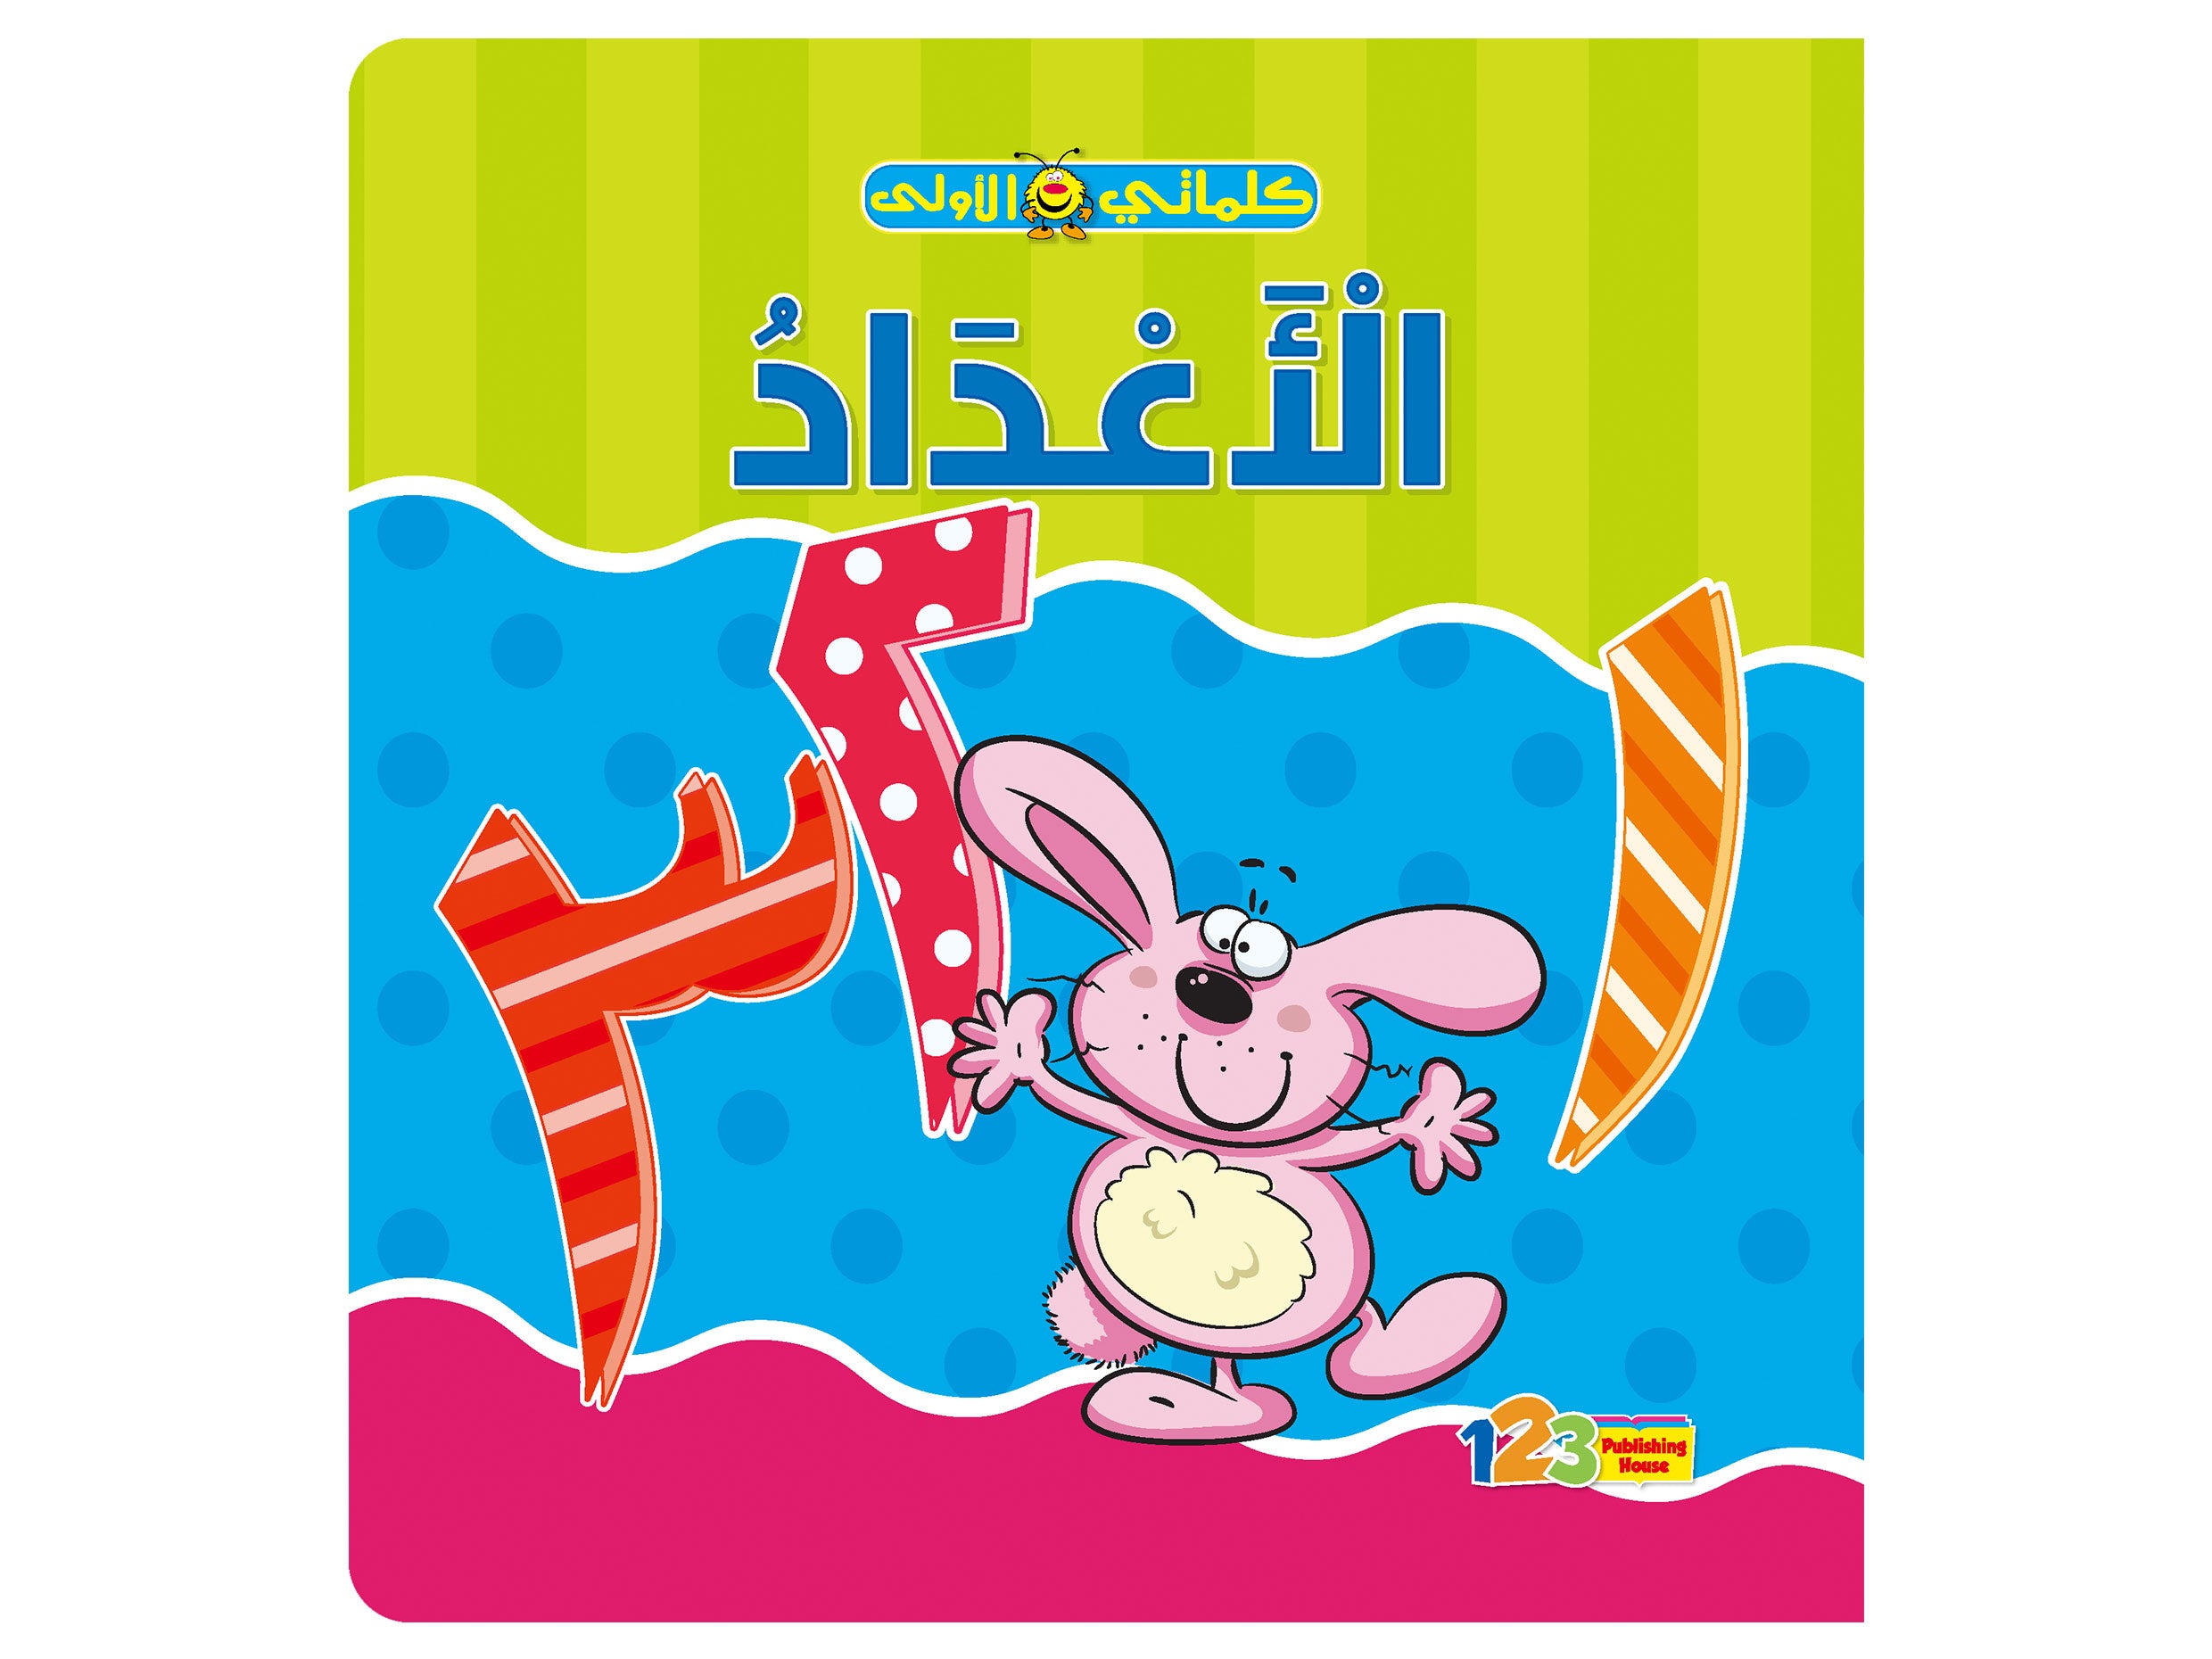  الأعداد - كتاب تعليمي للأطفال باللغة العربية